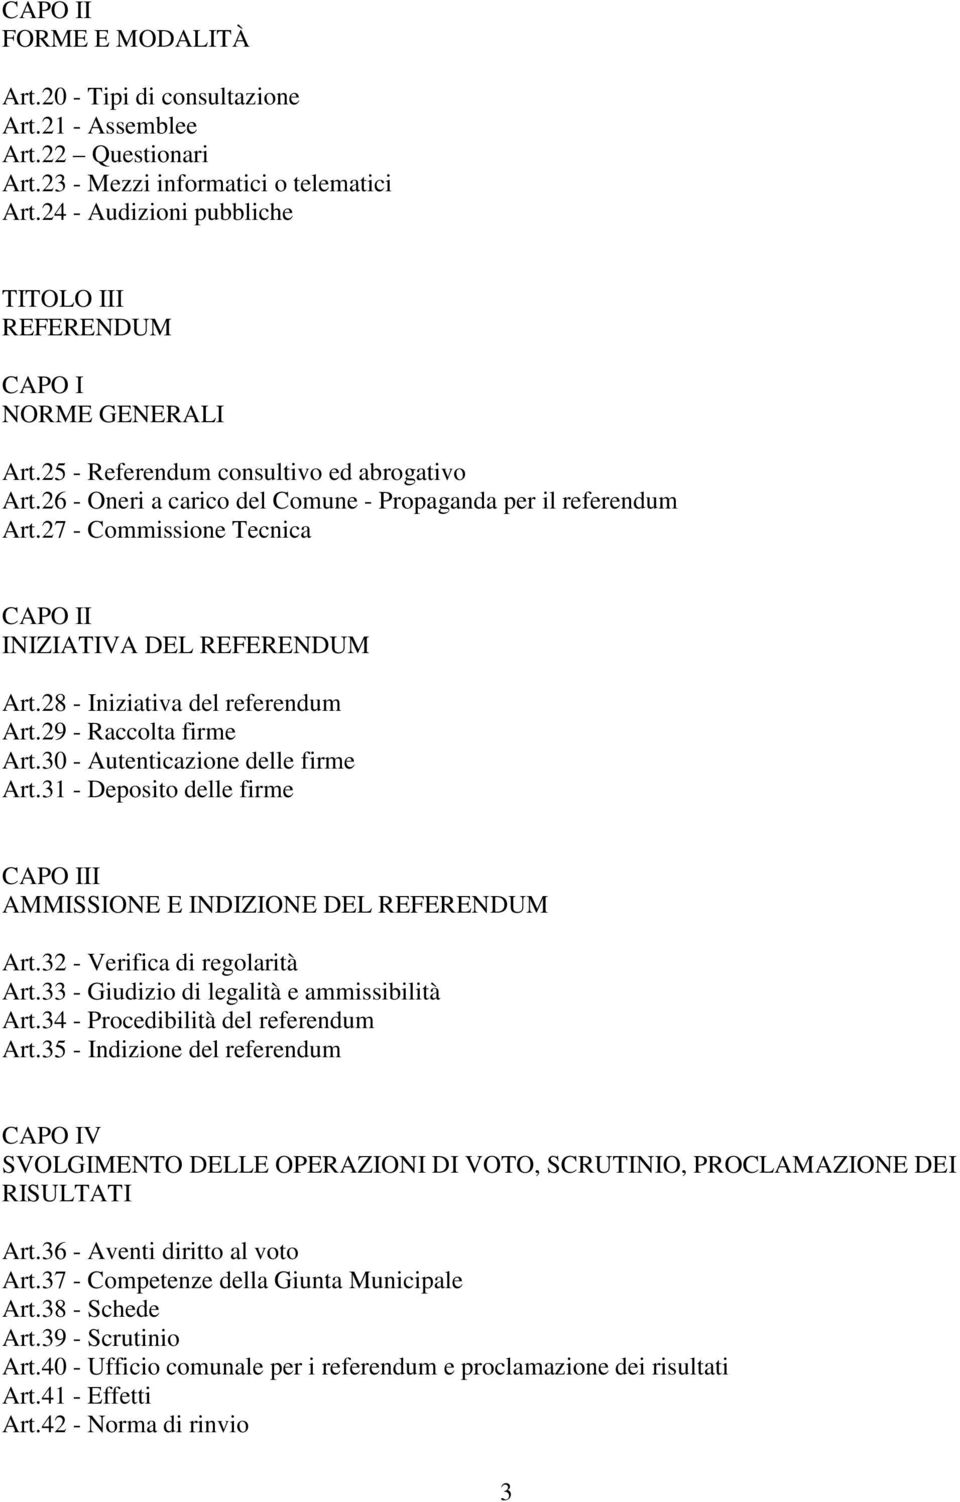 27 - Commissione Tecnica CAPO II INIZIATIVA DEL REFERENDUM Art.28 - Iniziativa del referendum Art.29 - Raccolta firme Art.30 - Autenticazione delle firme Art.